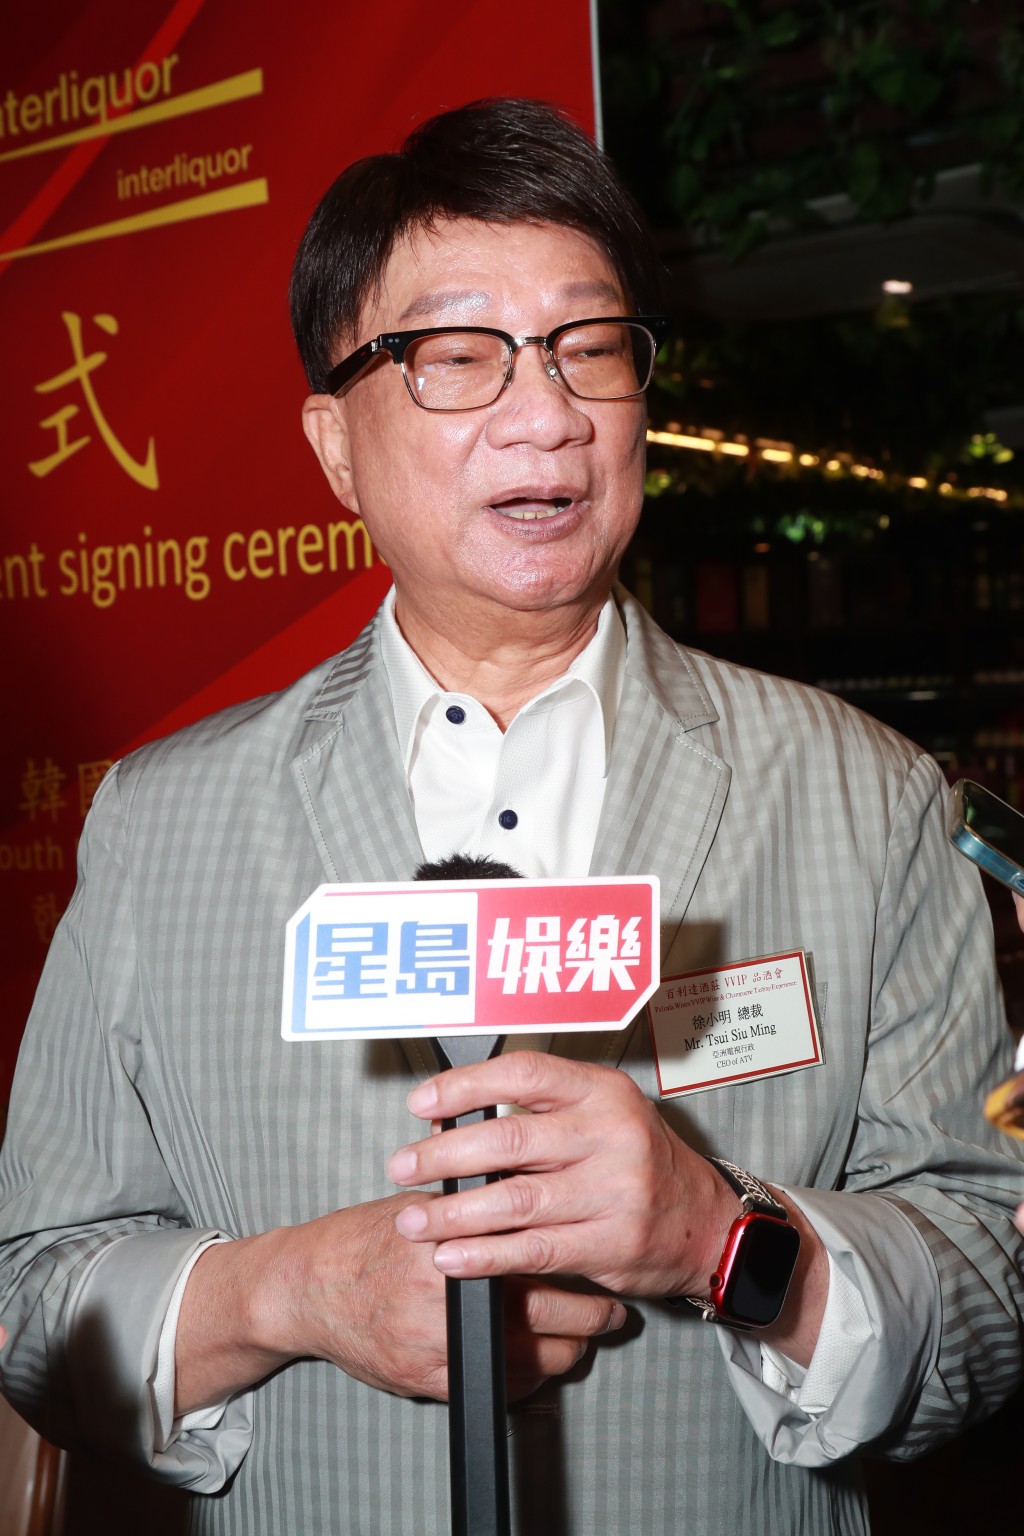 亞洲電視行政總裁徐小明近日忙為籌備6月6日舉行的亞視66周年台慶，屆時作回顧及公布發展新方向。